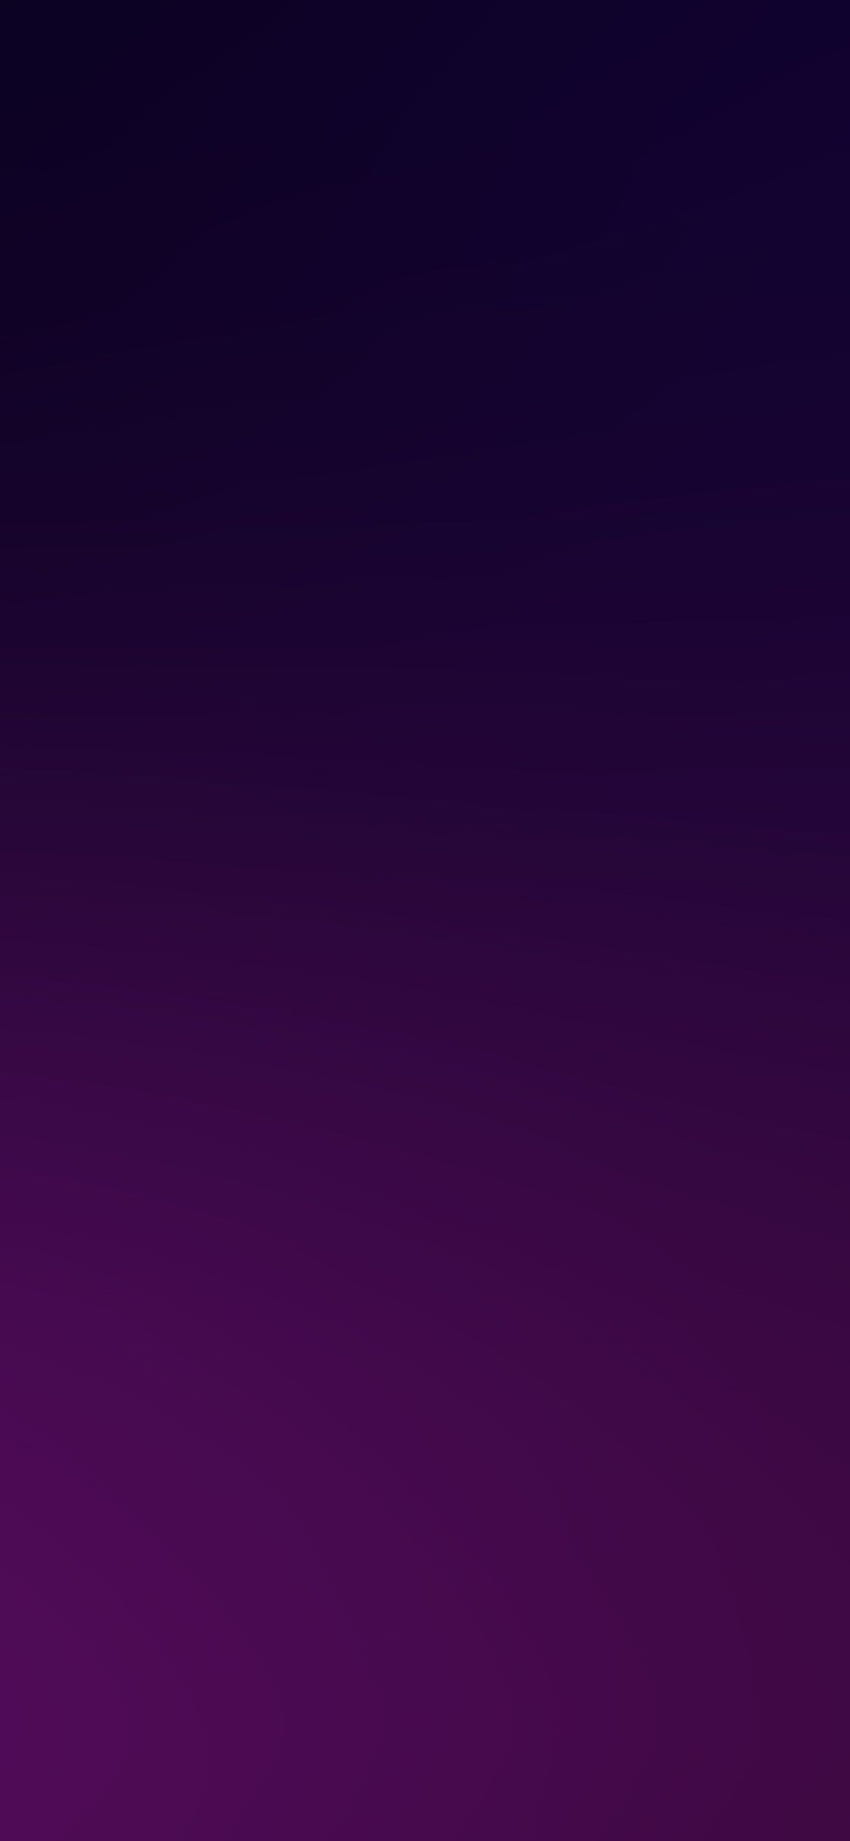 iPhoneX. gradación de desenfoque púrpura oscuro fondo de pantalla del teléfono